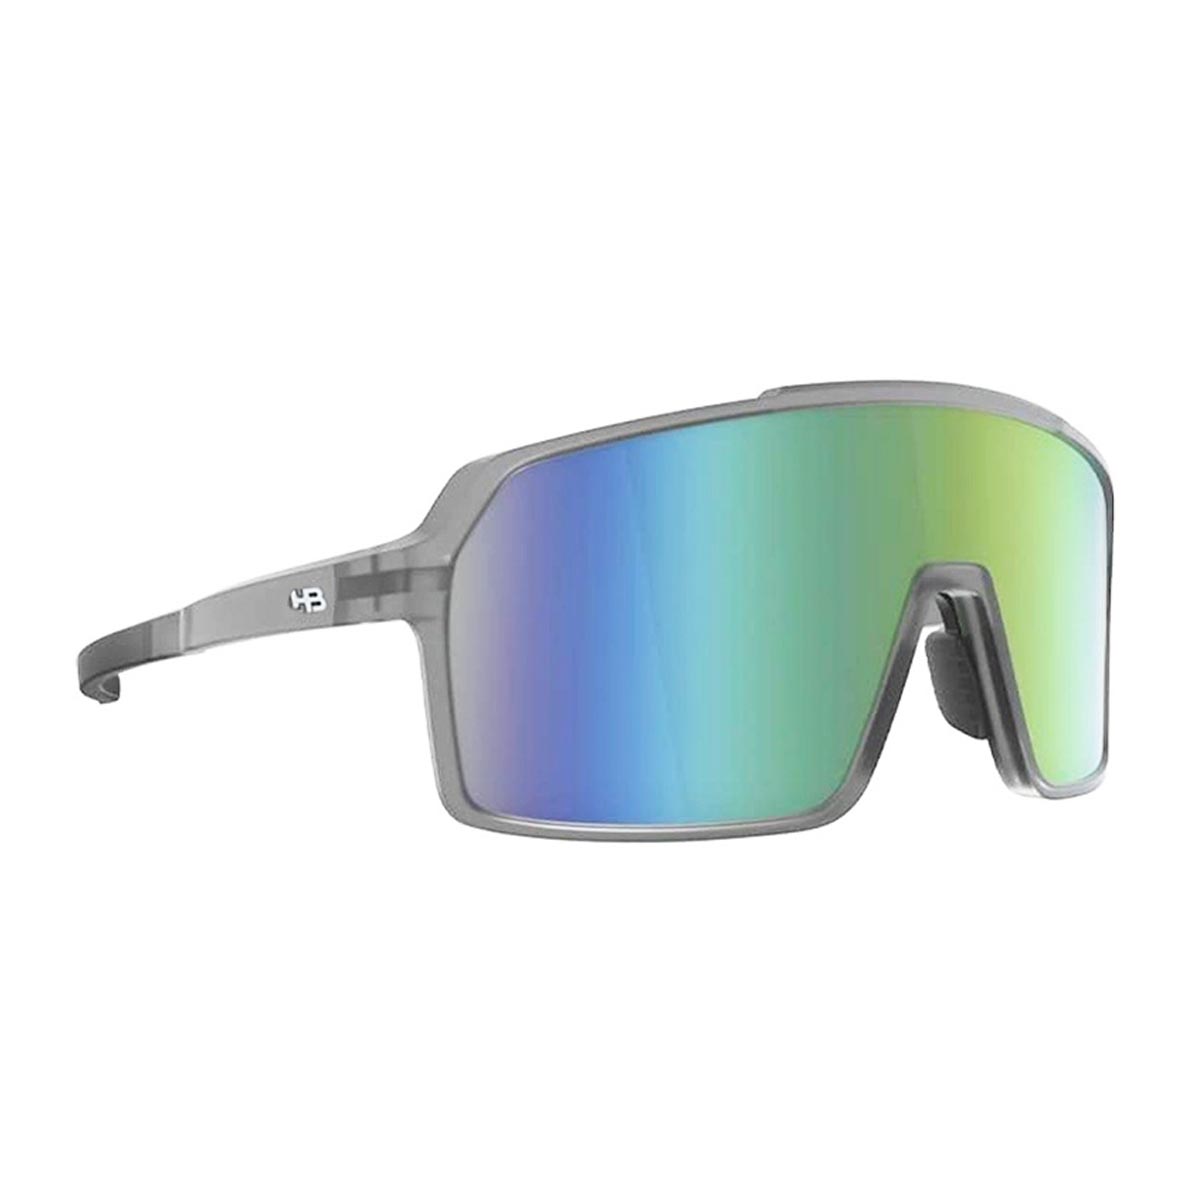 Oculos para Ciclismo HB Grinder Cinza Smoky Fosco Quartz Lente Verde Chrome Espelhada